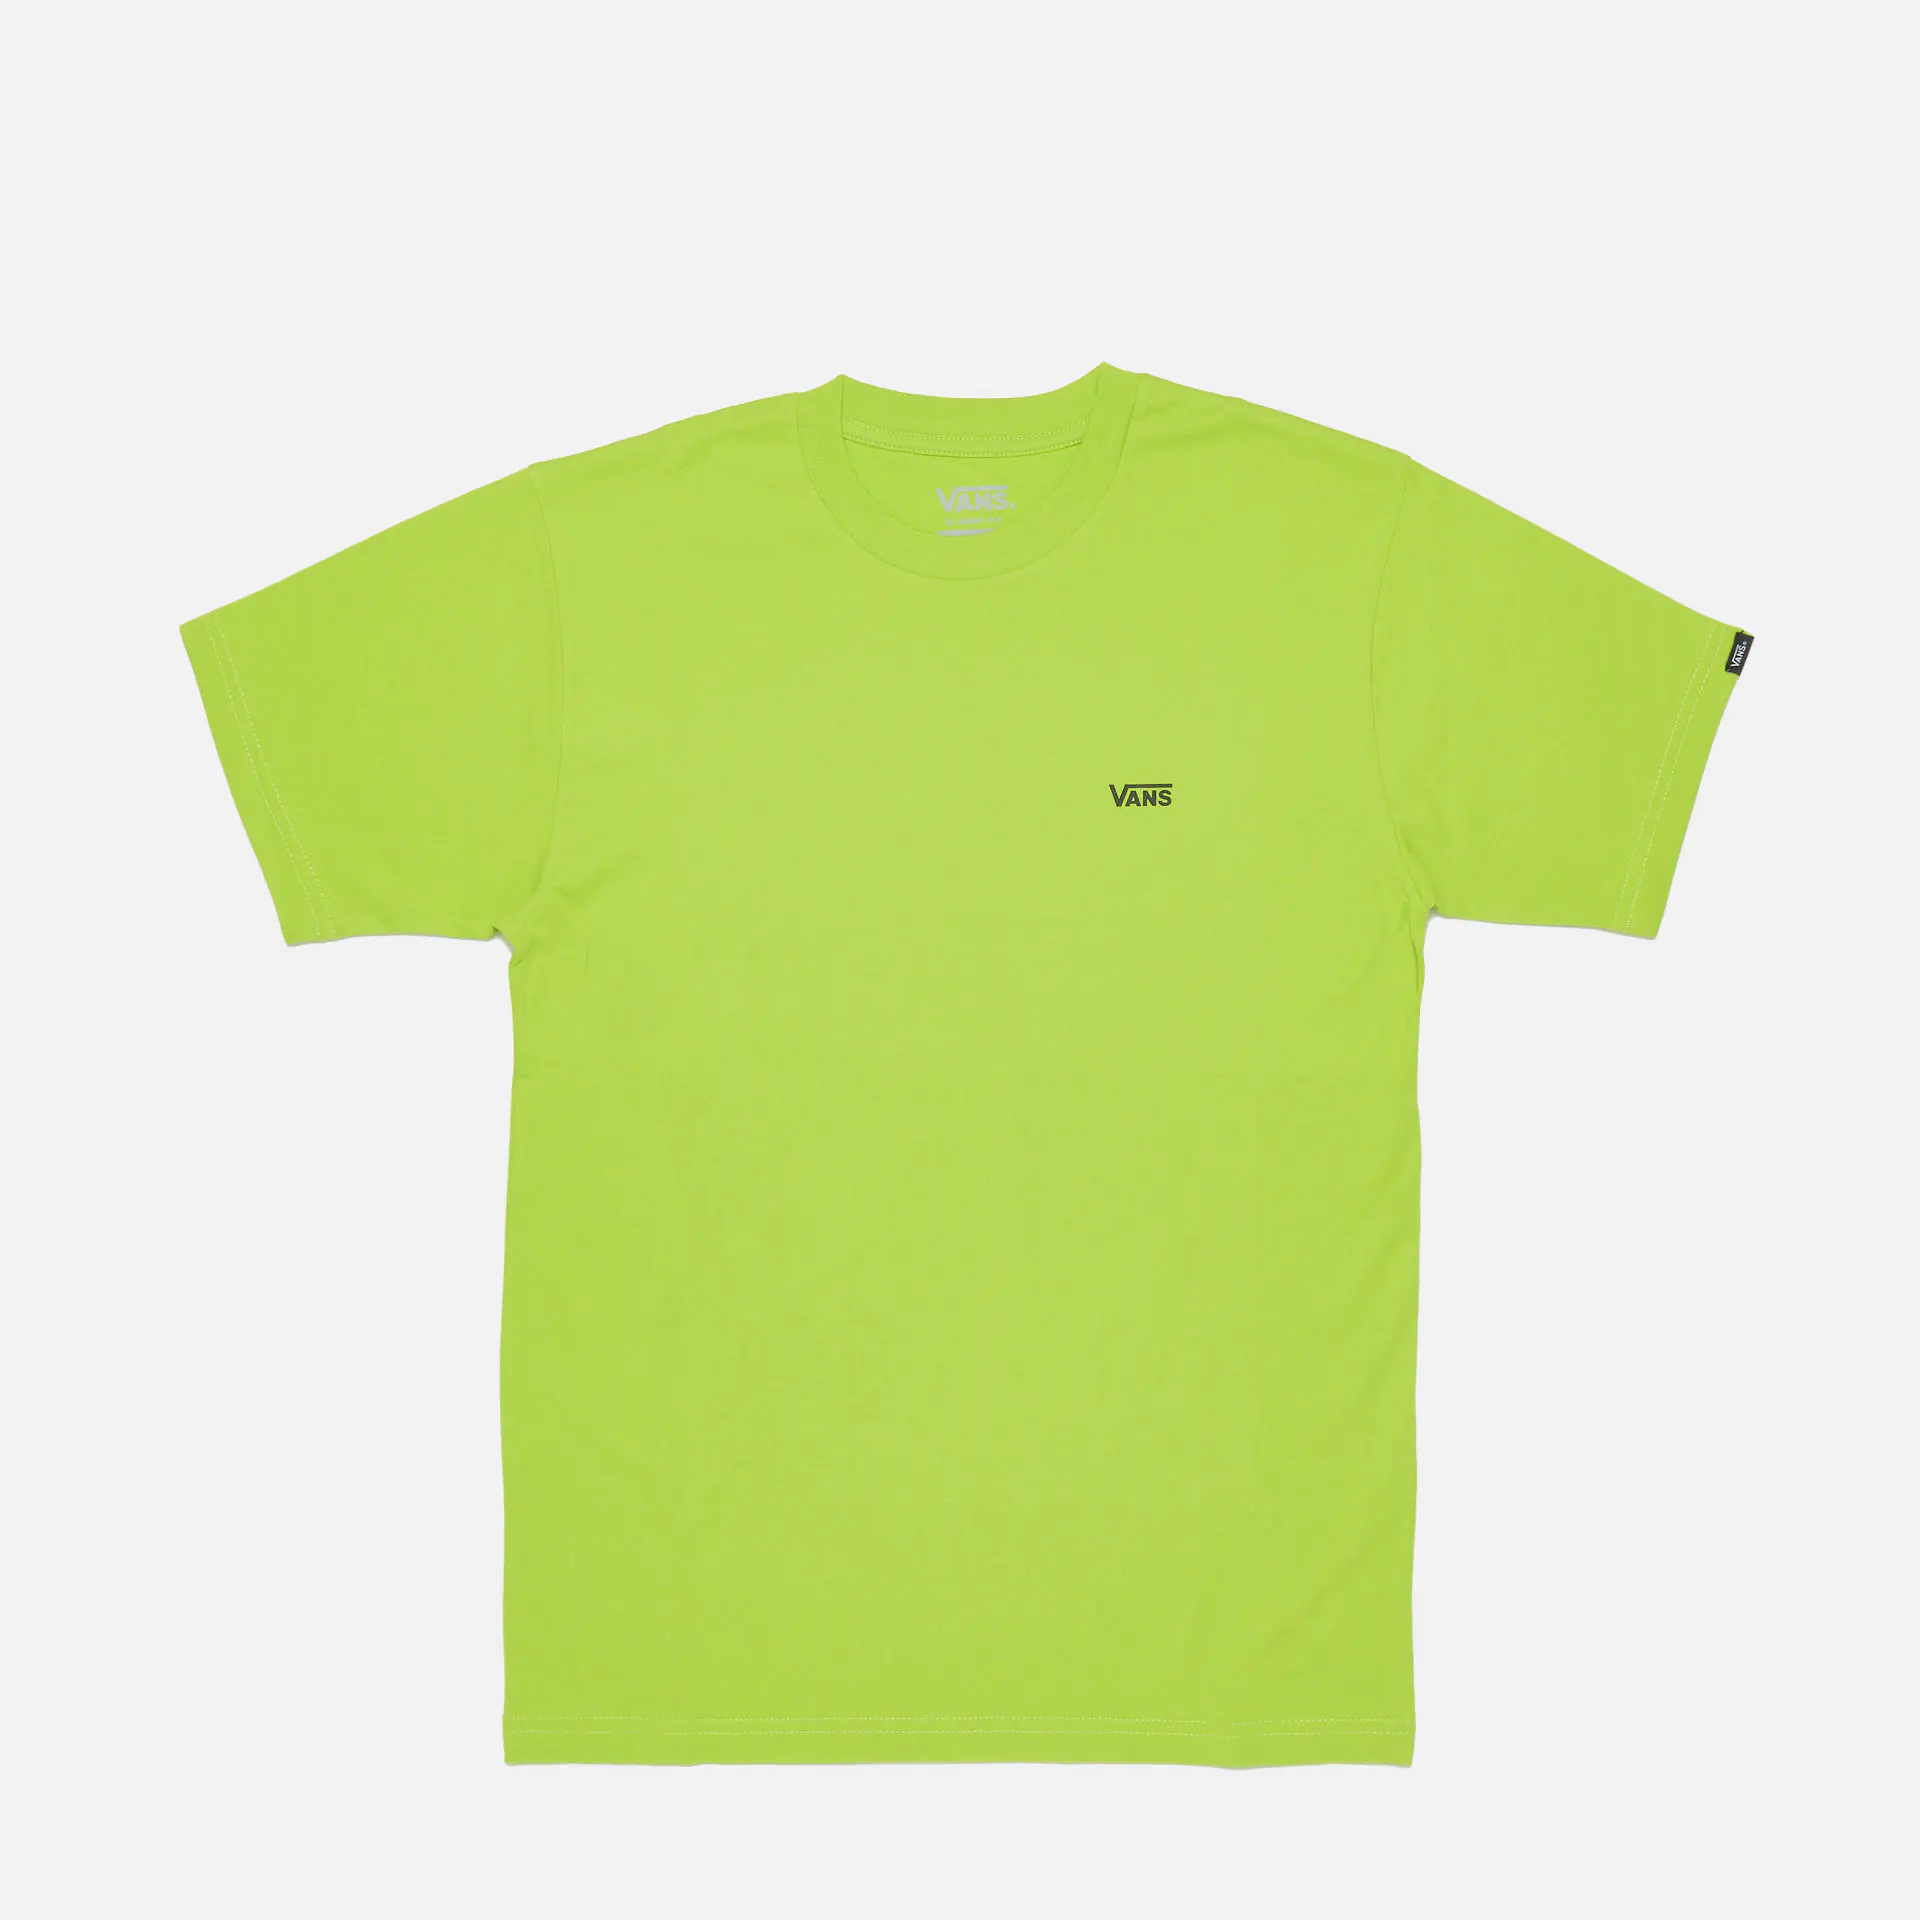 Vans Left Chest Logo T-Shirt Lime Green/Black